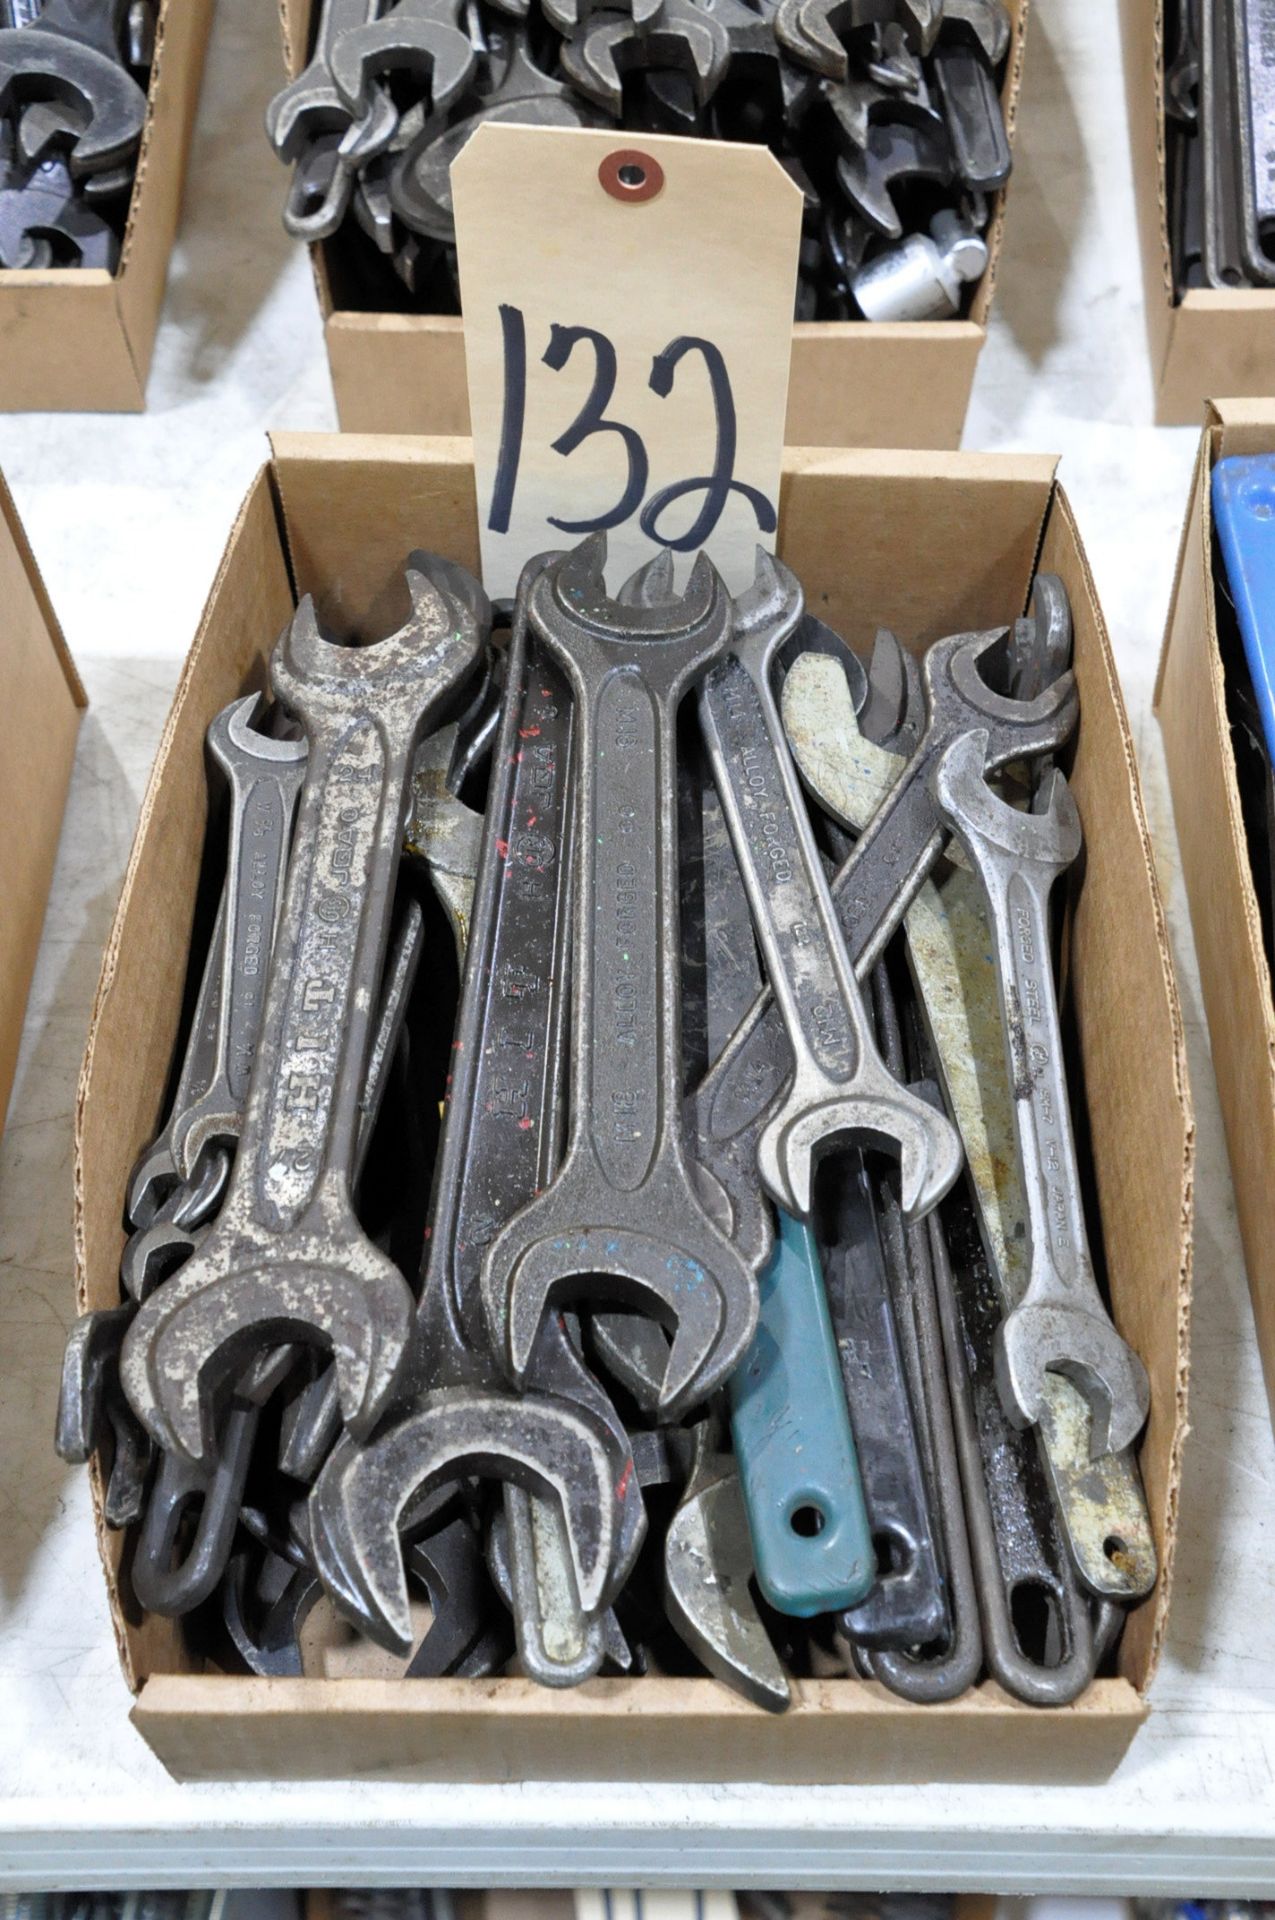 Lot-Black Machine Wrenches in (1) Box, (E-3)